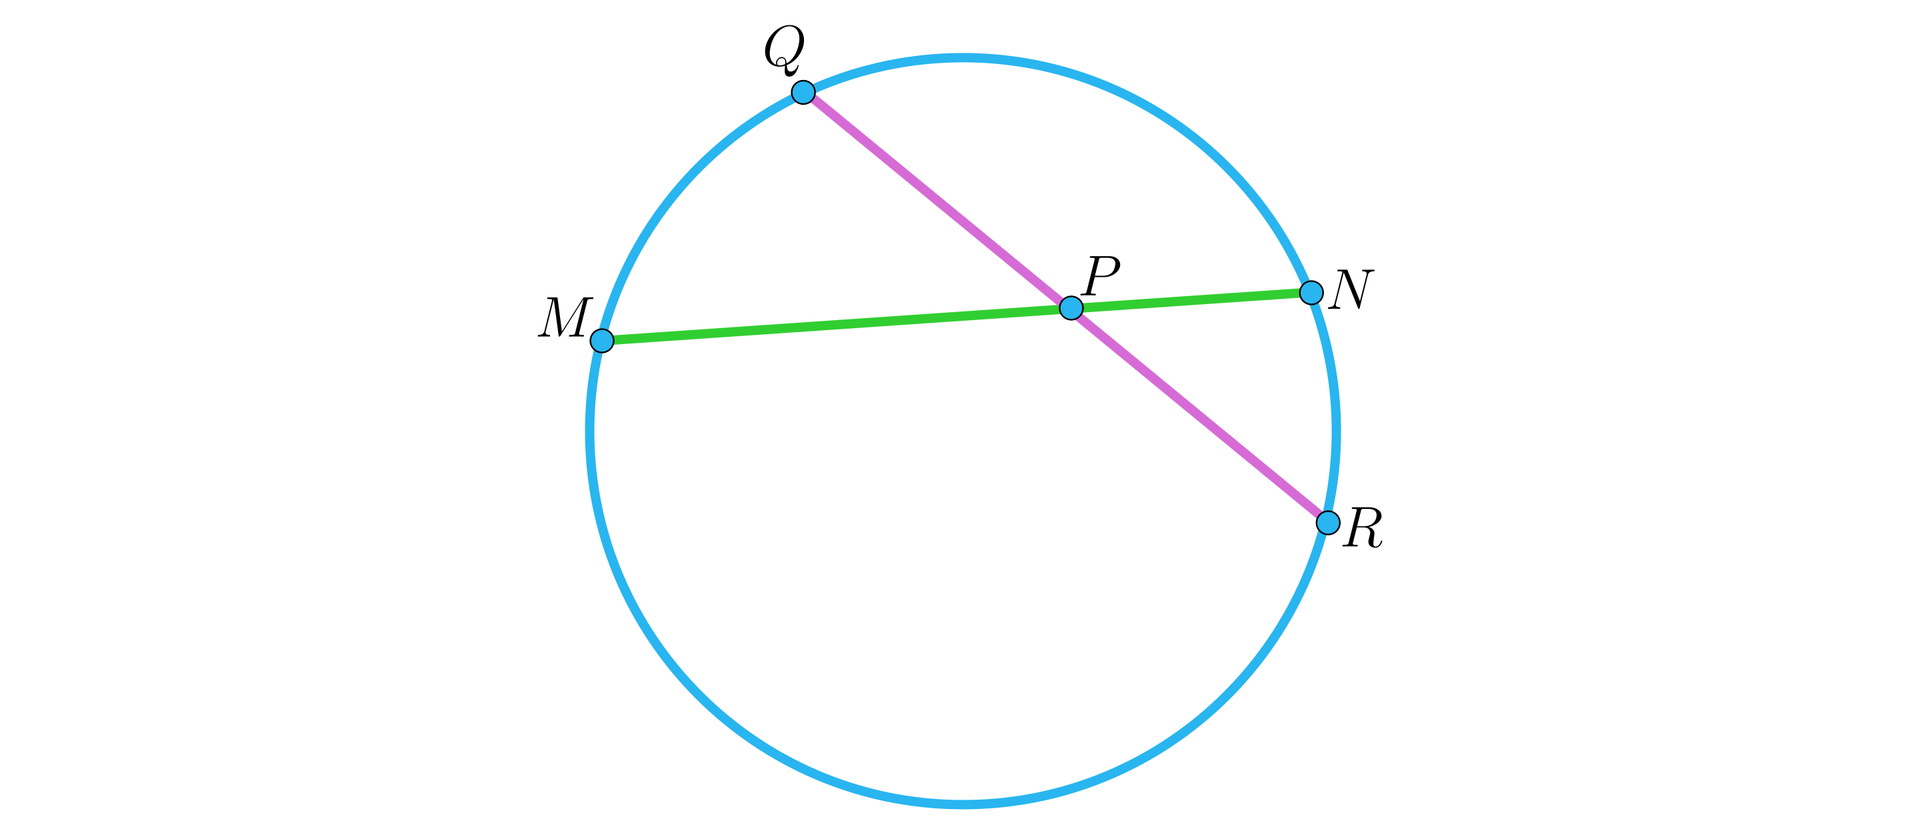 Na ilustracji przedstawiono okrąg, na którym zaznaczono dwie przecinające się cięciwy w punkcie P. Na okręgu zaznaczono cztery punkty. Cięciwa pierwsza łączy punkt Q z punktem R. Cięciwa druga łączy punkt M z punktem N. 